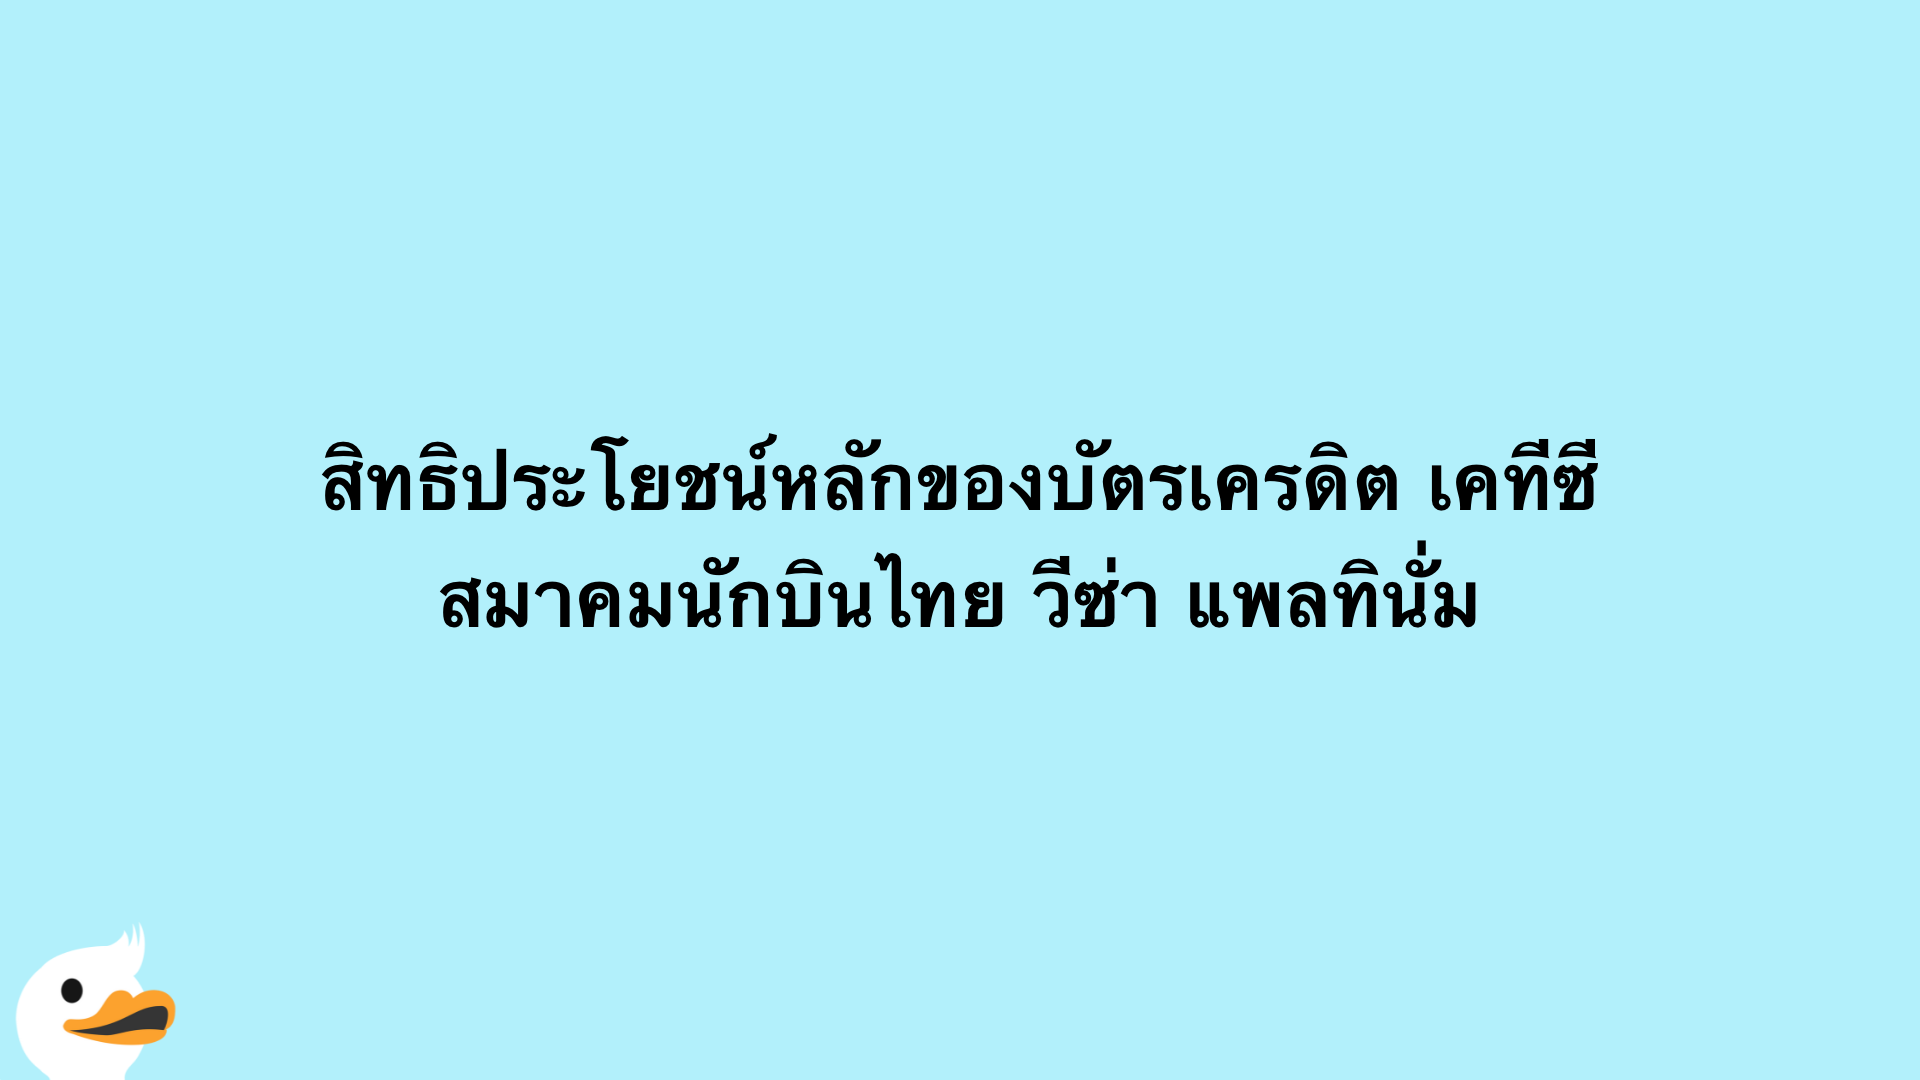 สิทธิประโยชน์หลักของบัตรเครดิต เคทีซี สมาคมนักบินไทย วีซ่า แพลทินั่ม